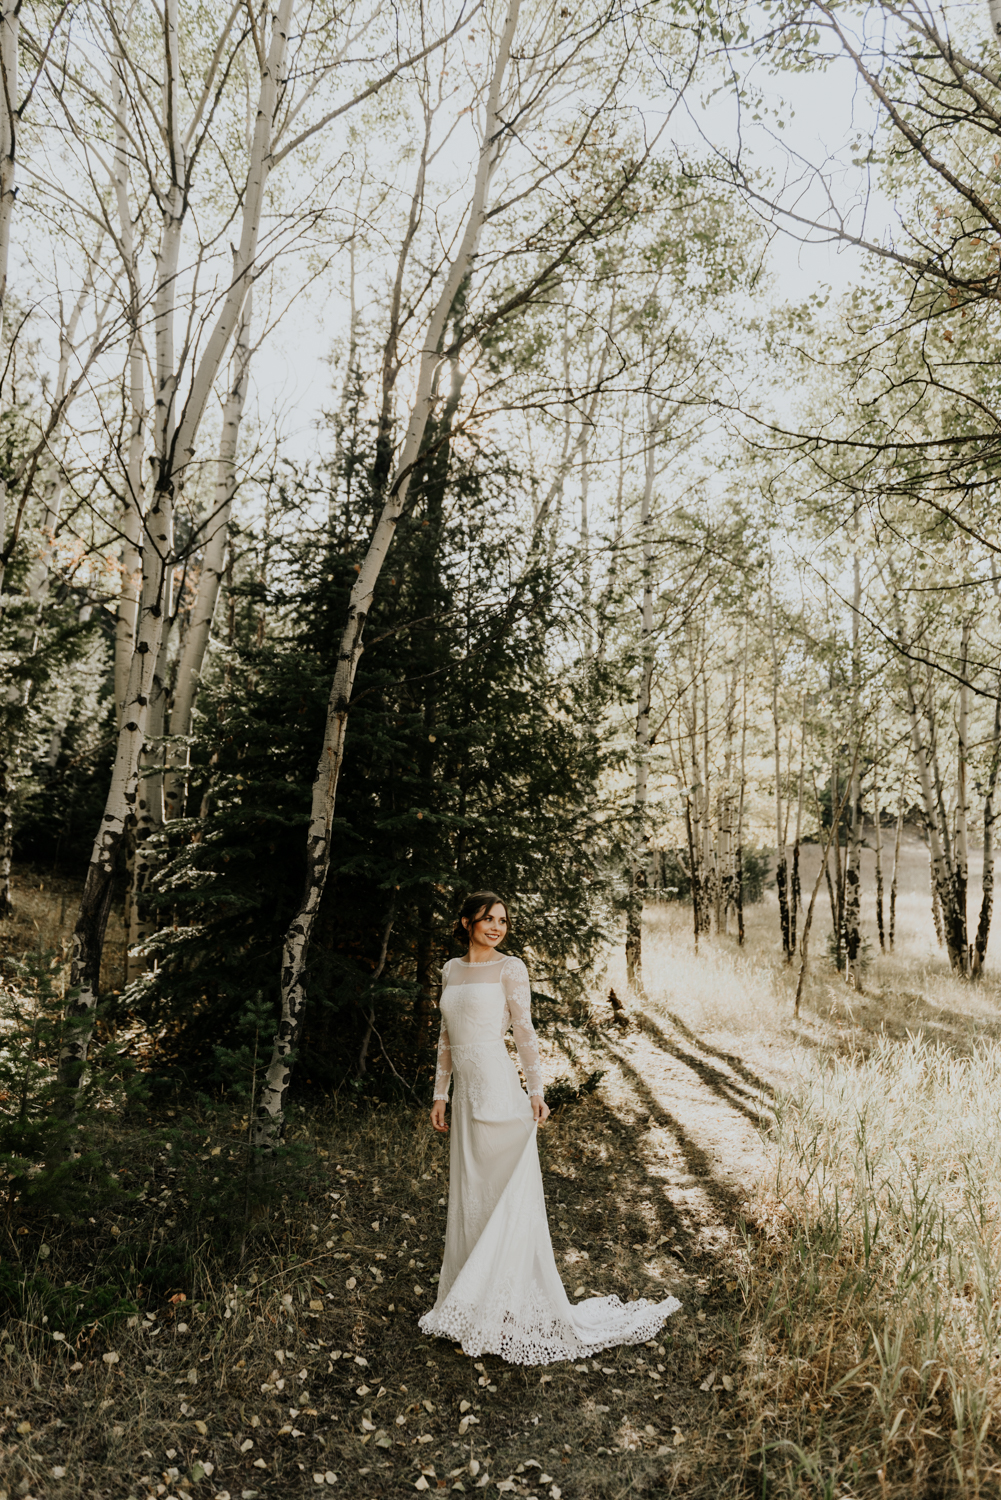 Intimate Mountain Wedding Bride Photos in Meadow Creek, Pine Colorado